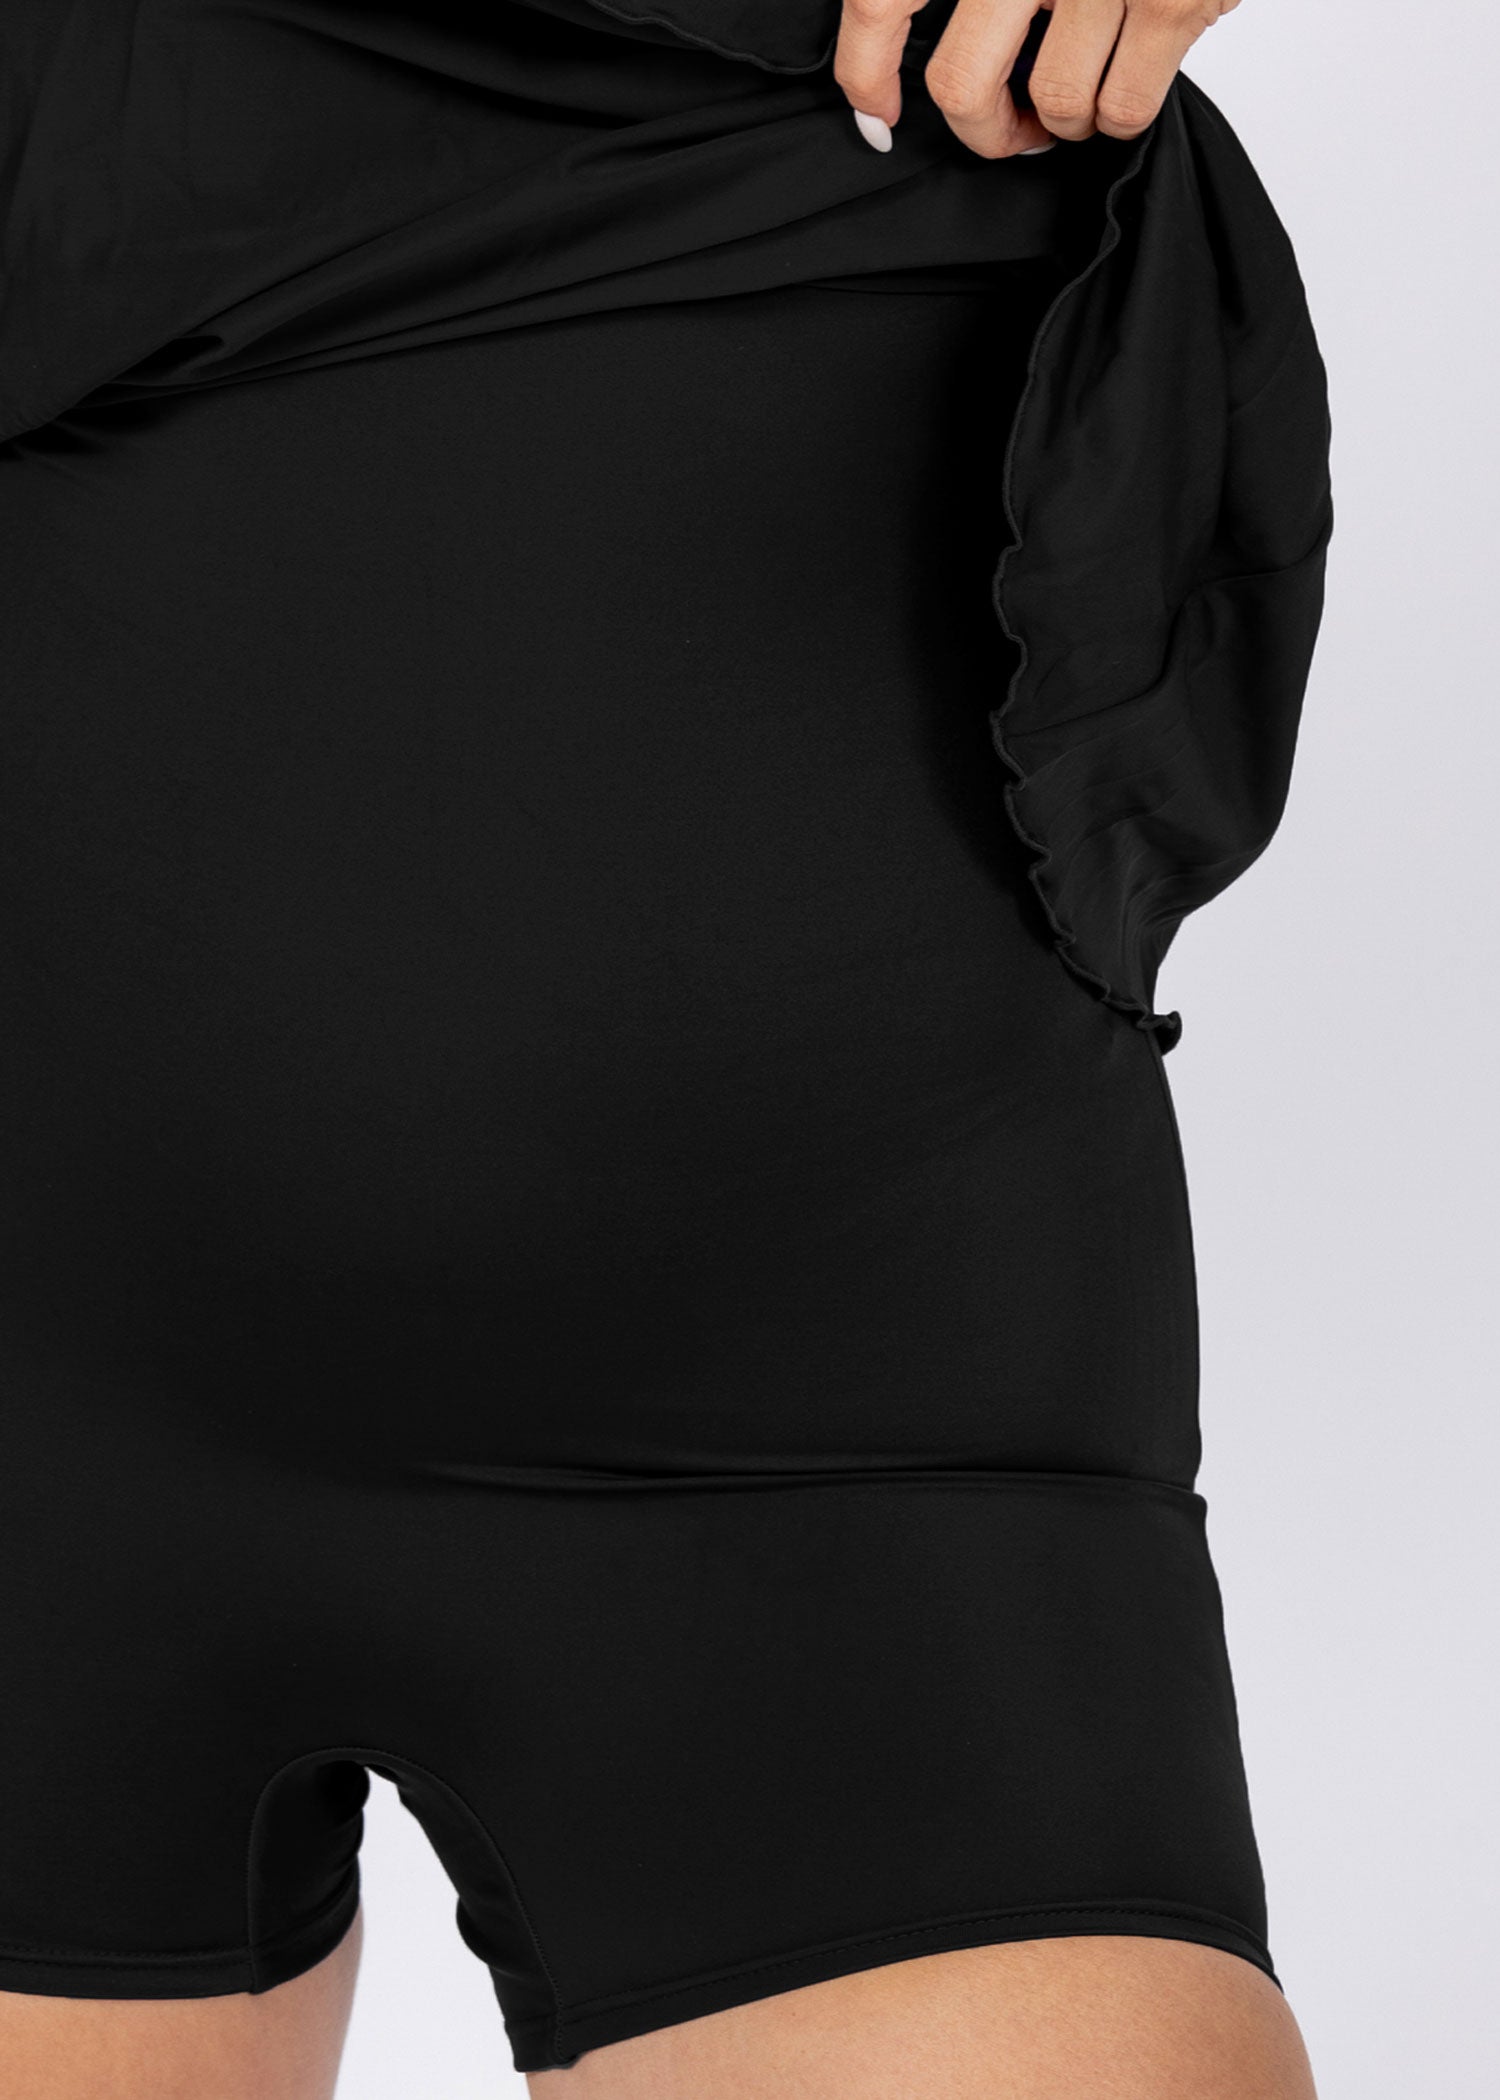 בגד ים שמלה עם מכנסון שחור - לויטקס Levitex